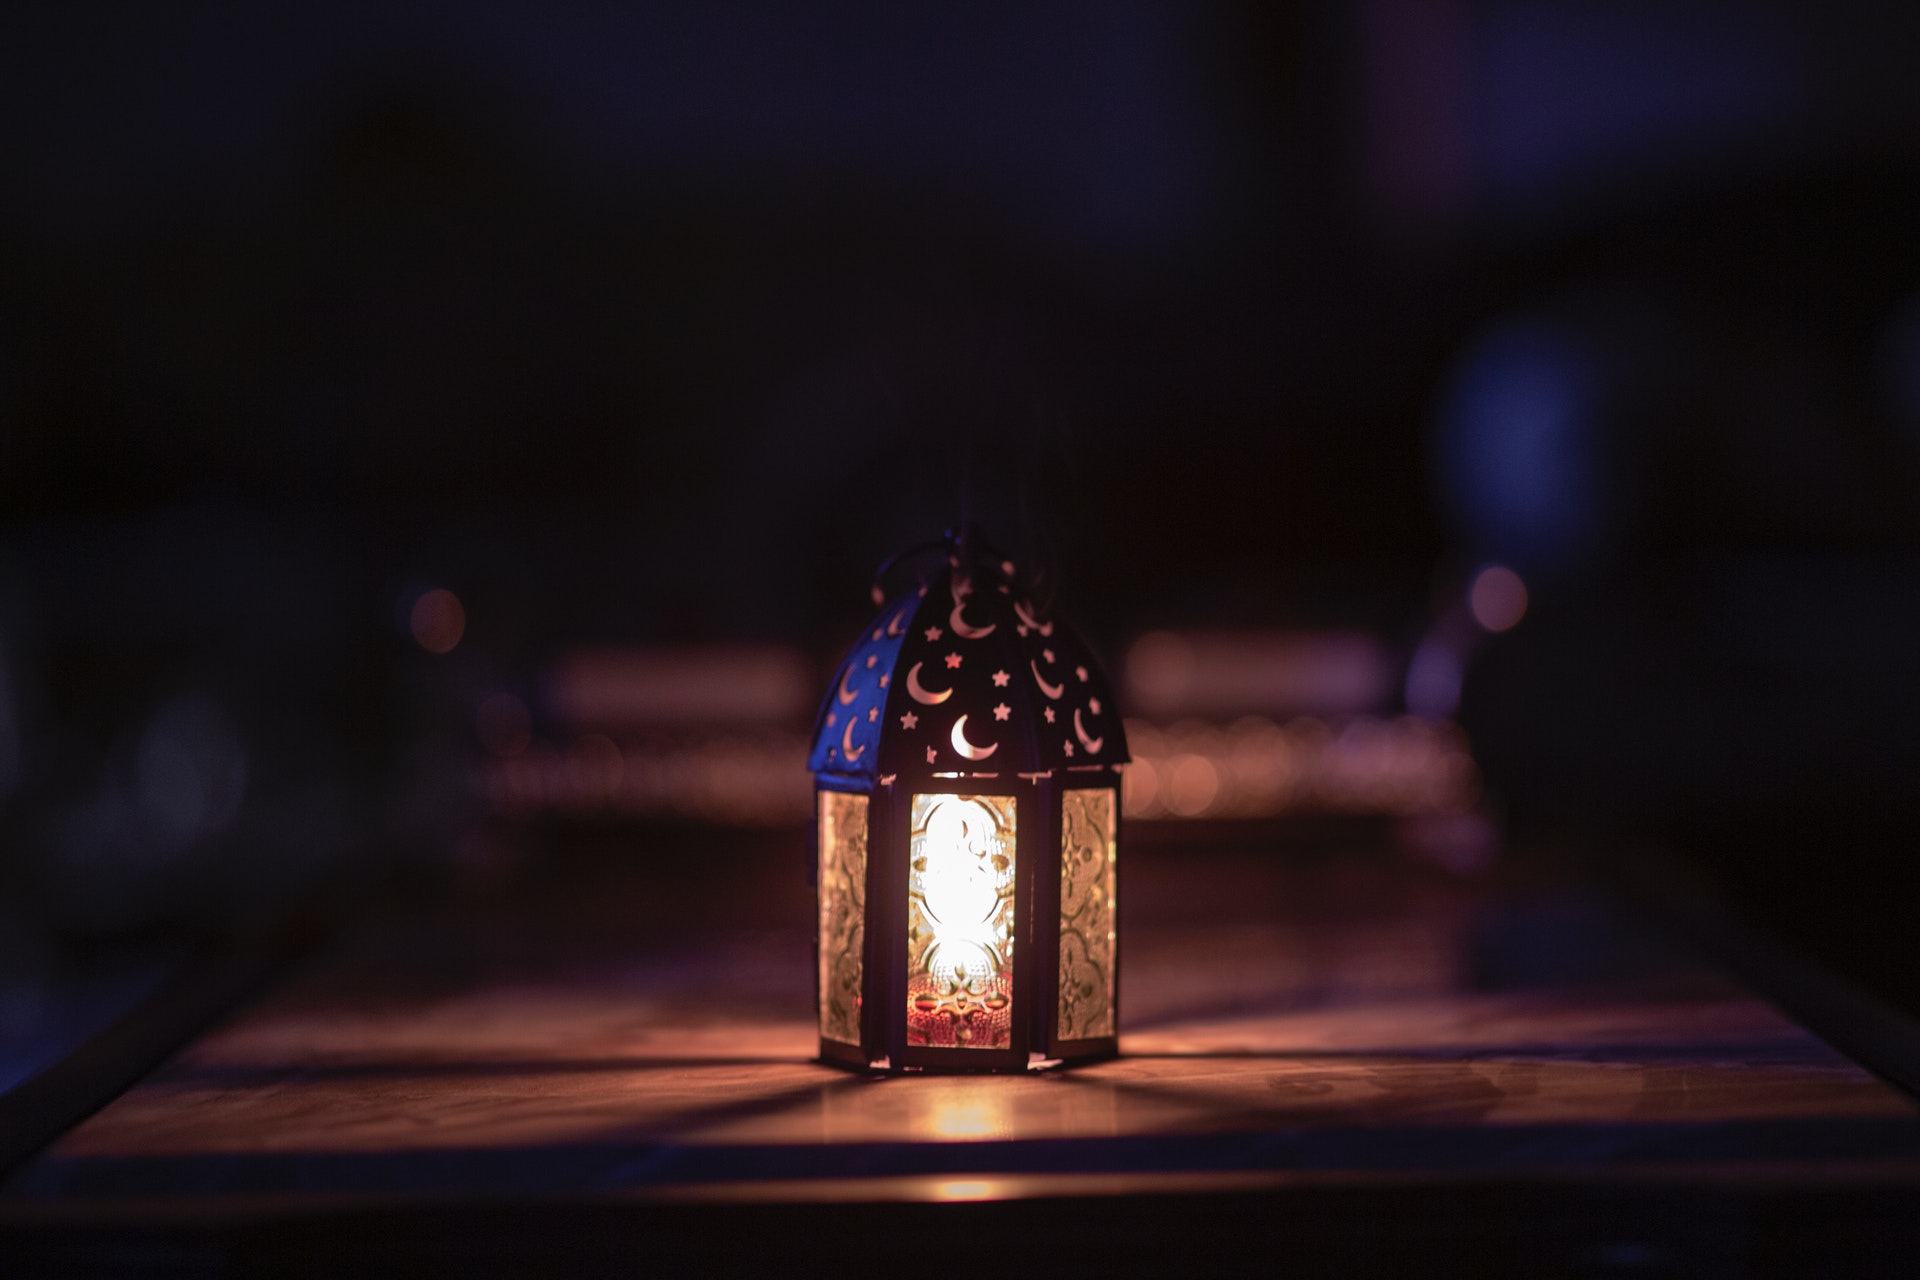 Ramadan lantern glowing in the dark